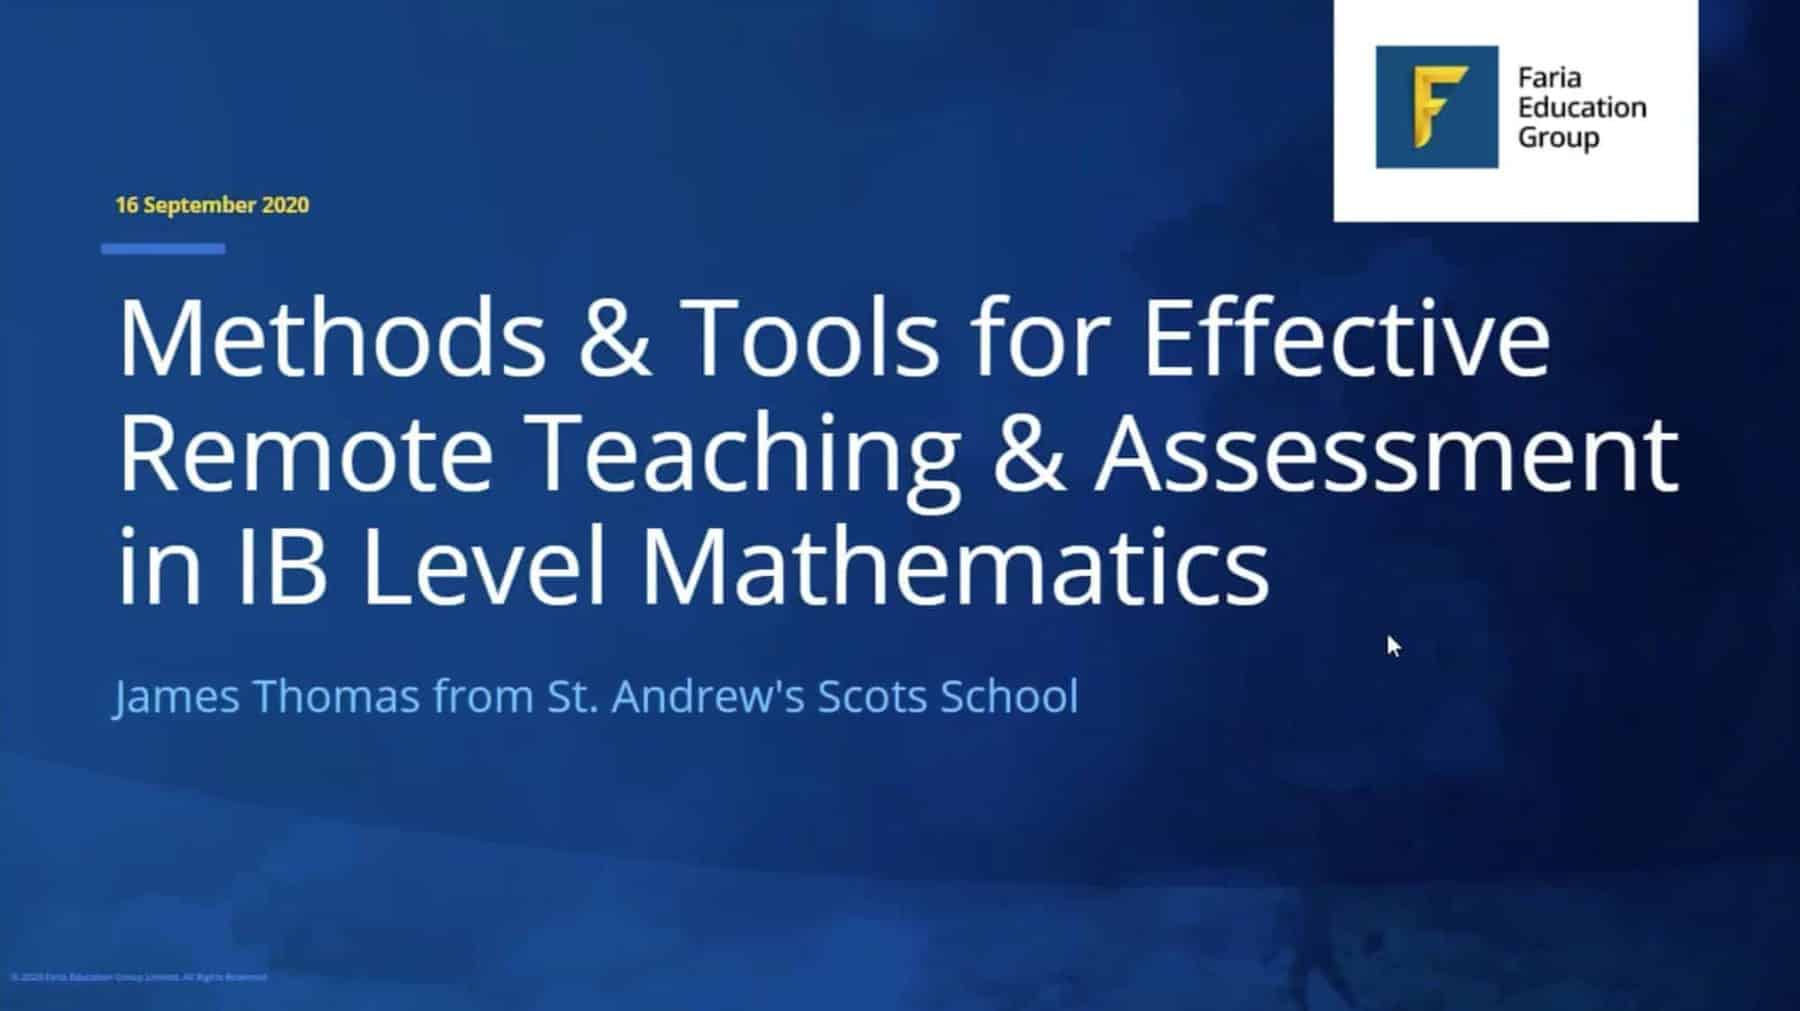 线上线下融合教学 | 针对IB数学教学于评估的方法与工具